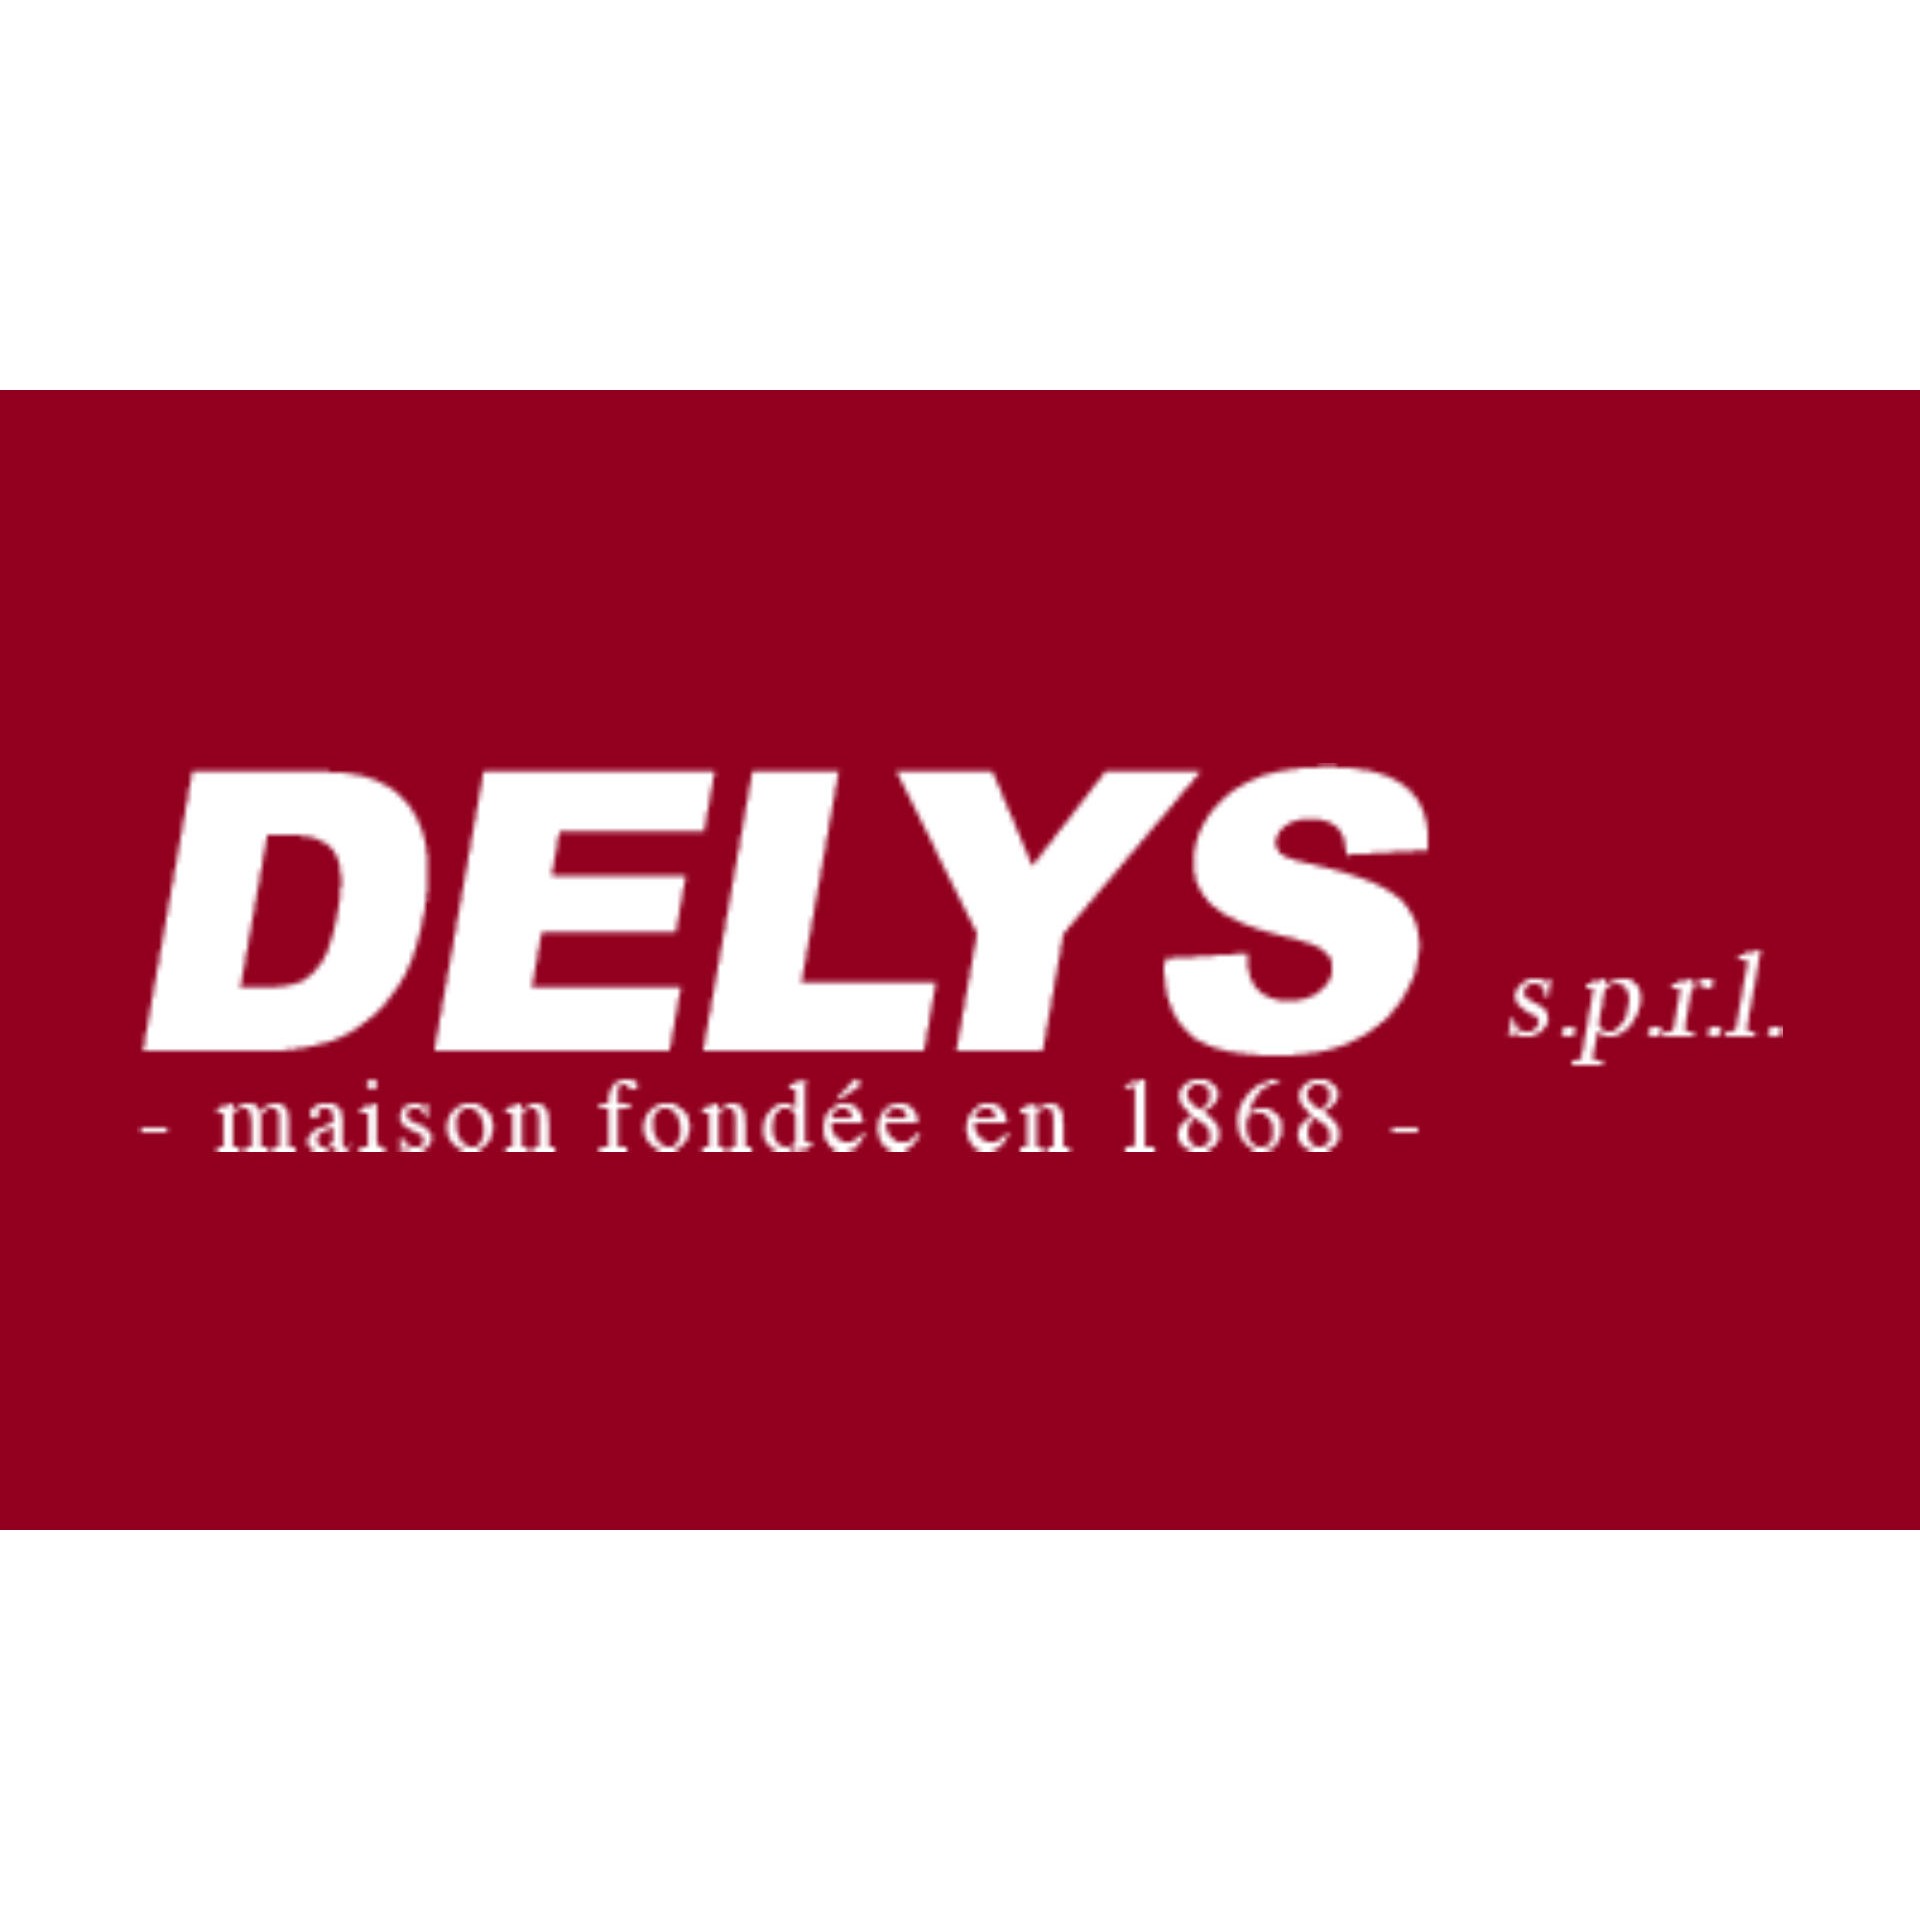 Delys s.p.r.l. Logo